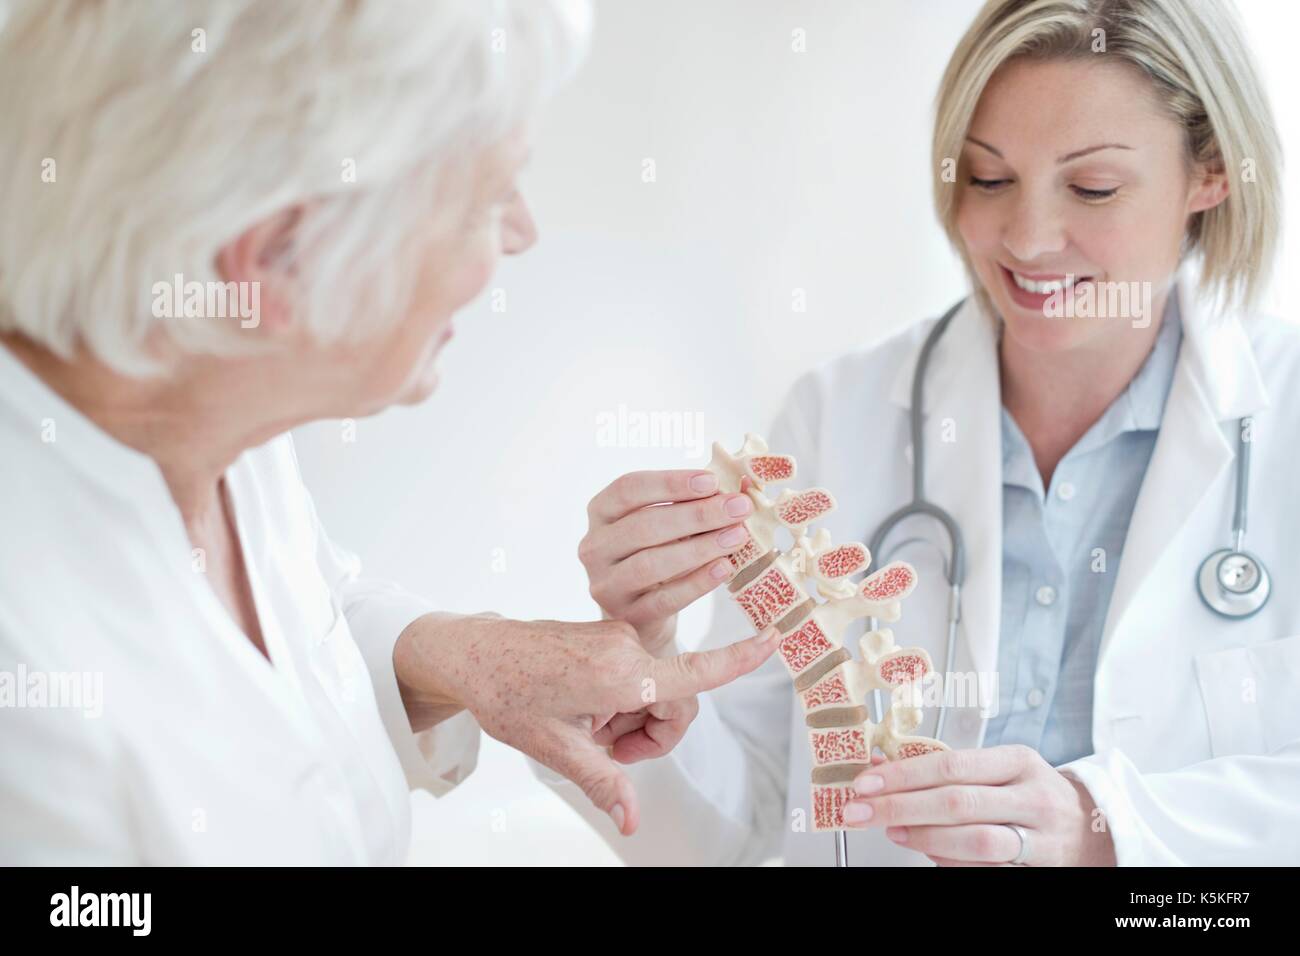 Medico donna che mostra il paziente modello anatomico della colonna vertebrale umana. Foto Stock